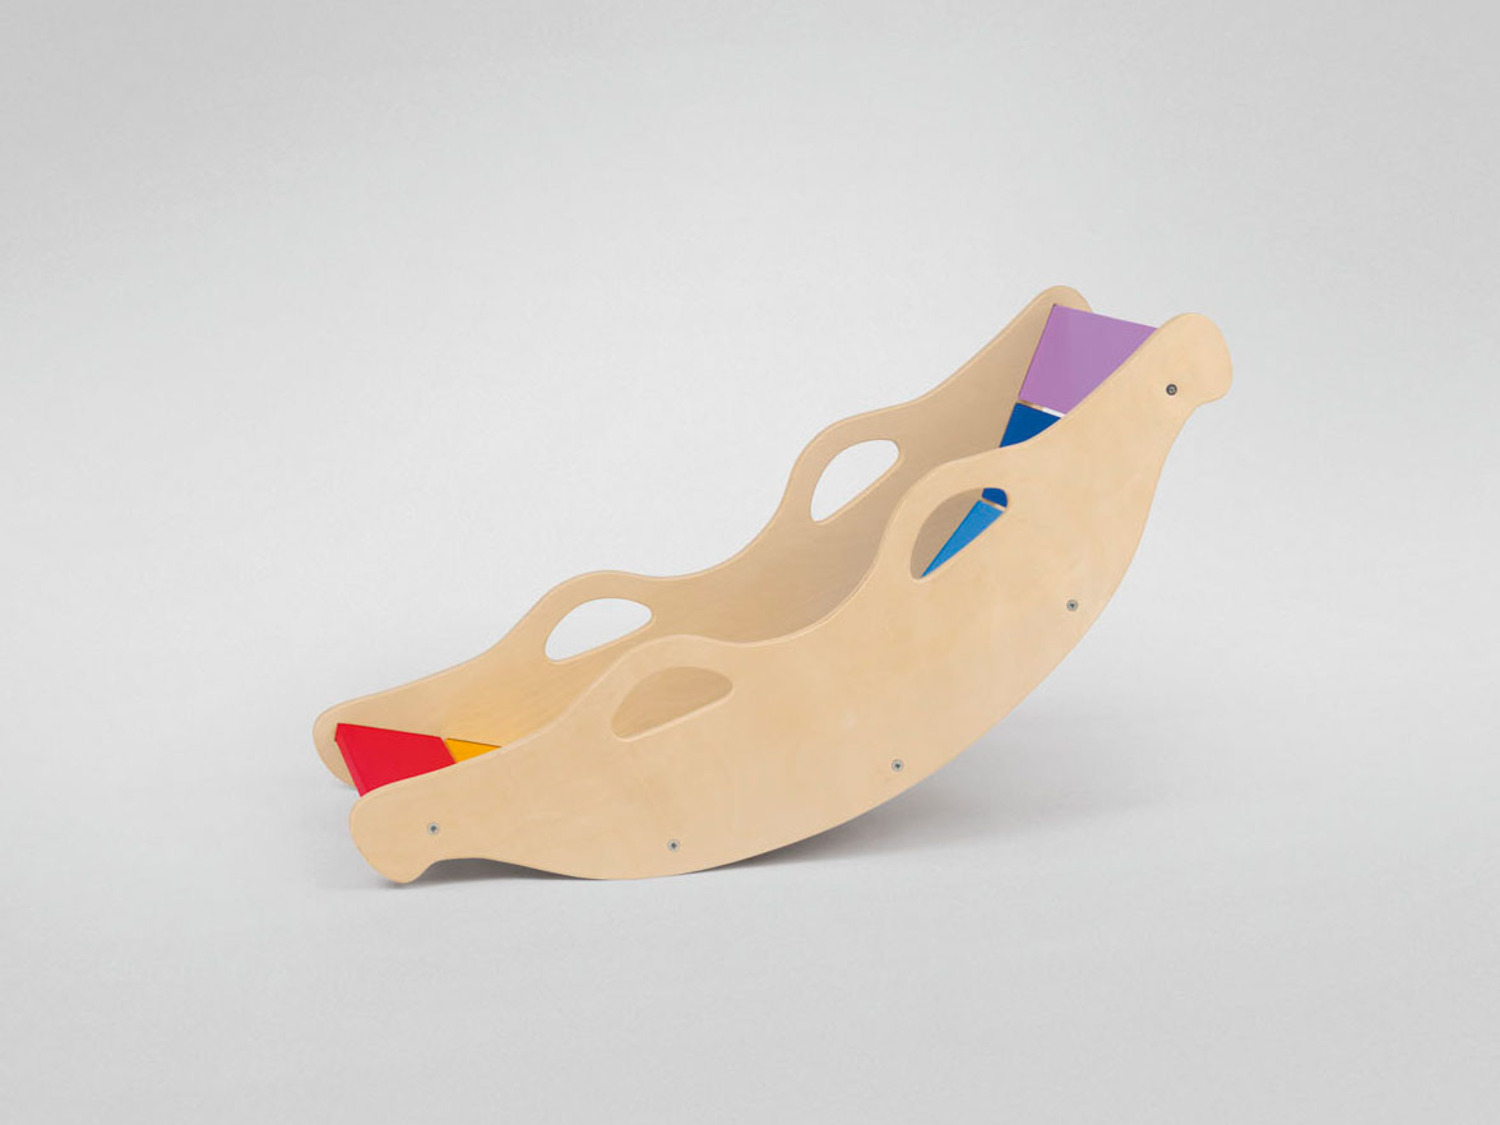 Playtive Holz Balancewippe, in Regenbogenfarben | LIDL